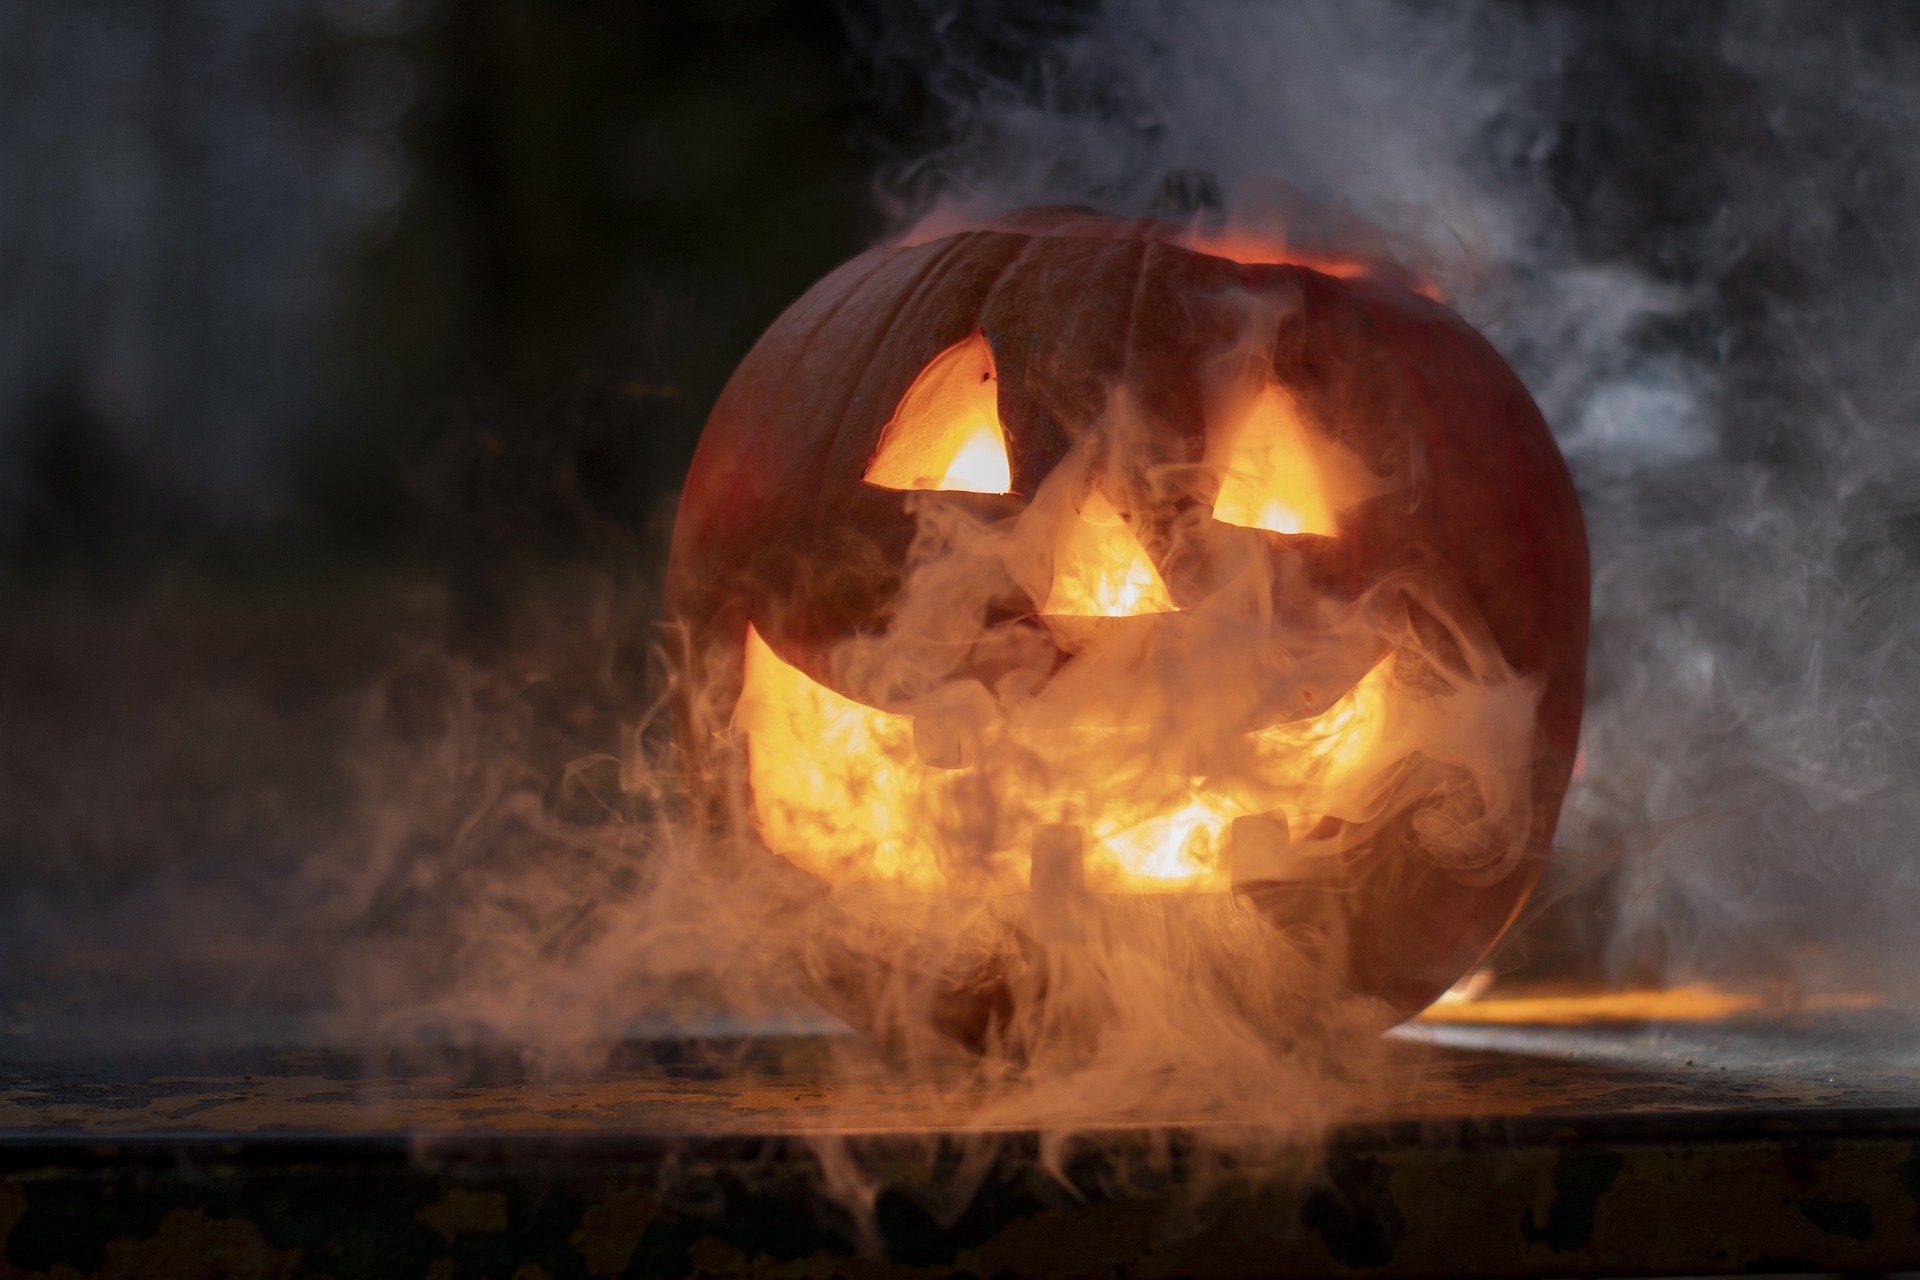 nachhaltiges Halloween (Quelle: pixabay.com)